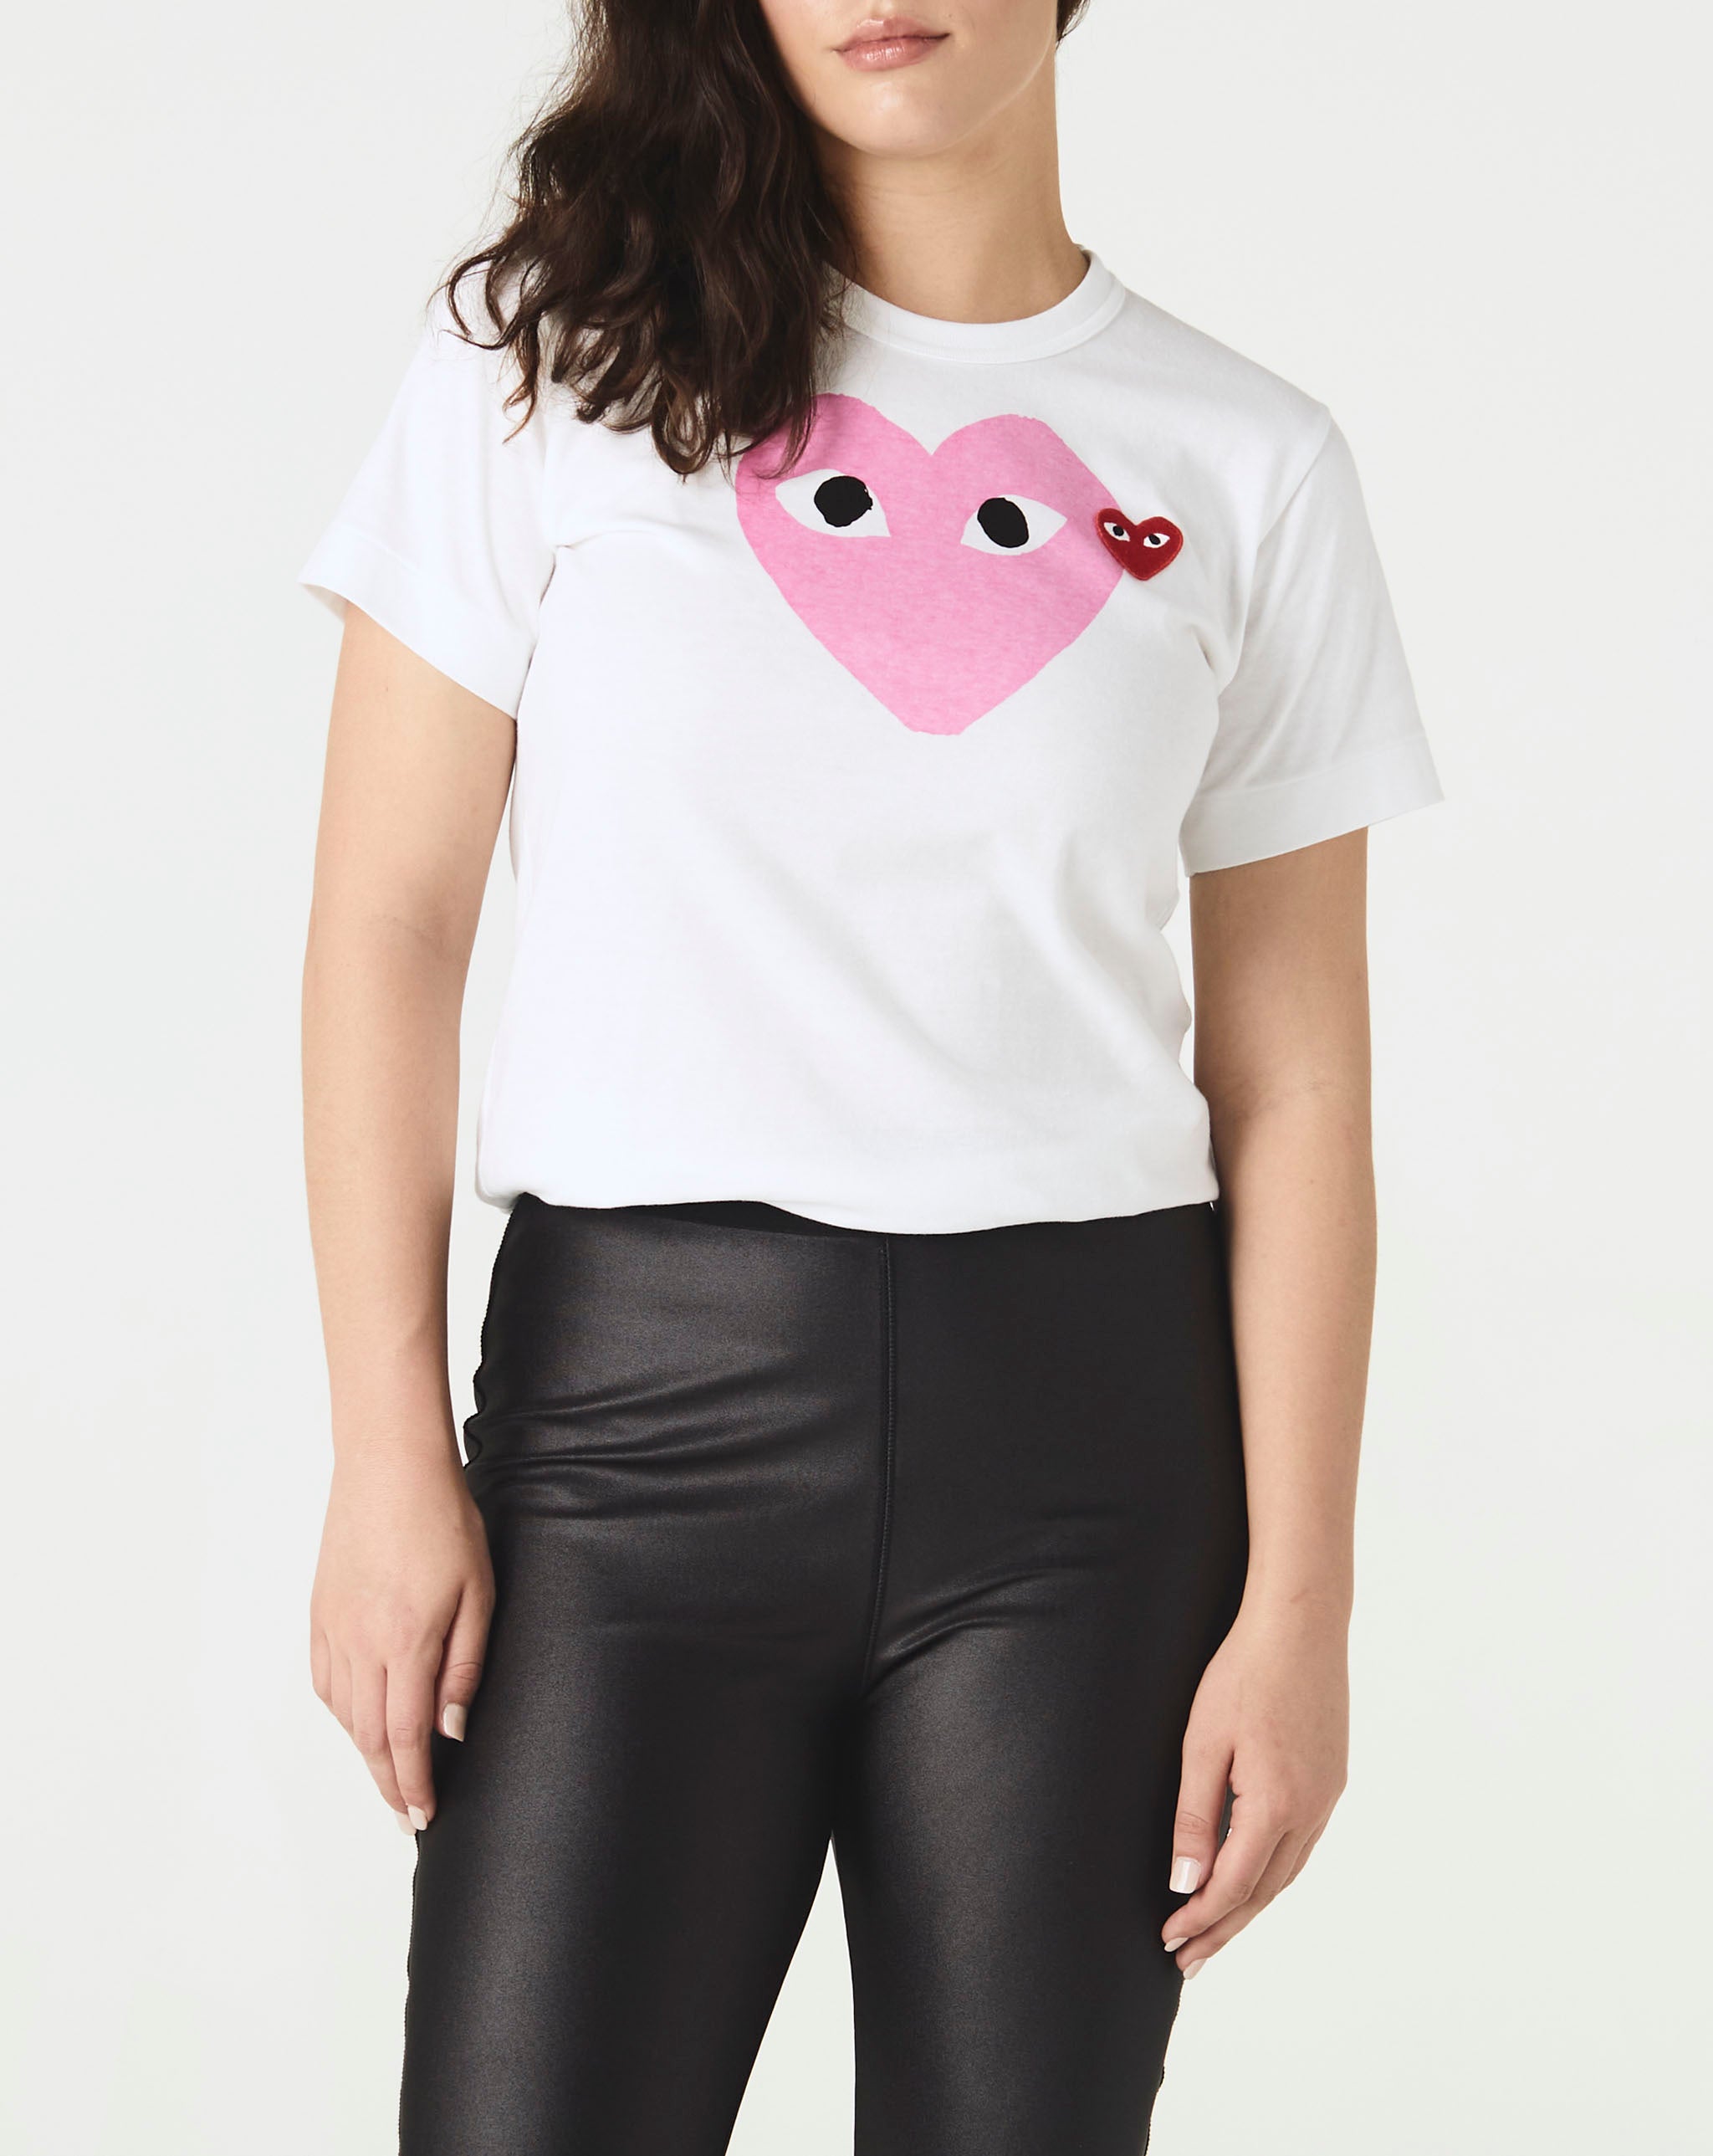 blood moon shirt Women's Heart T-Shirt  - Cheap Urlfreeze Jordan outlet